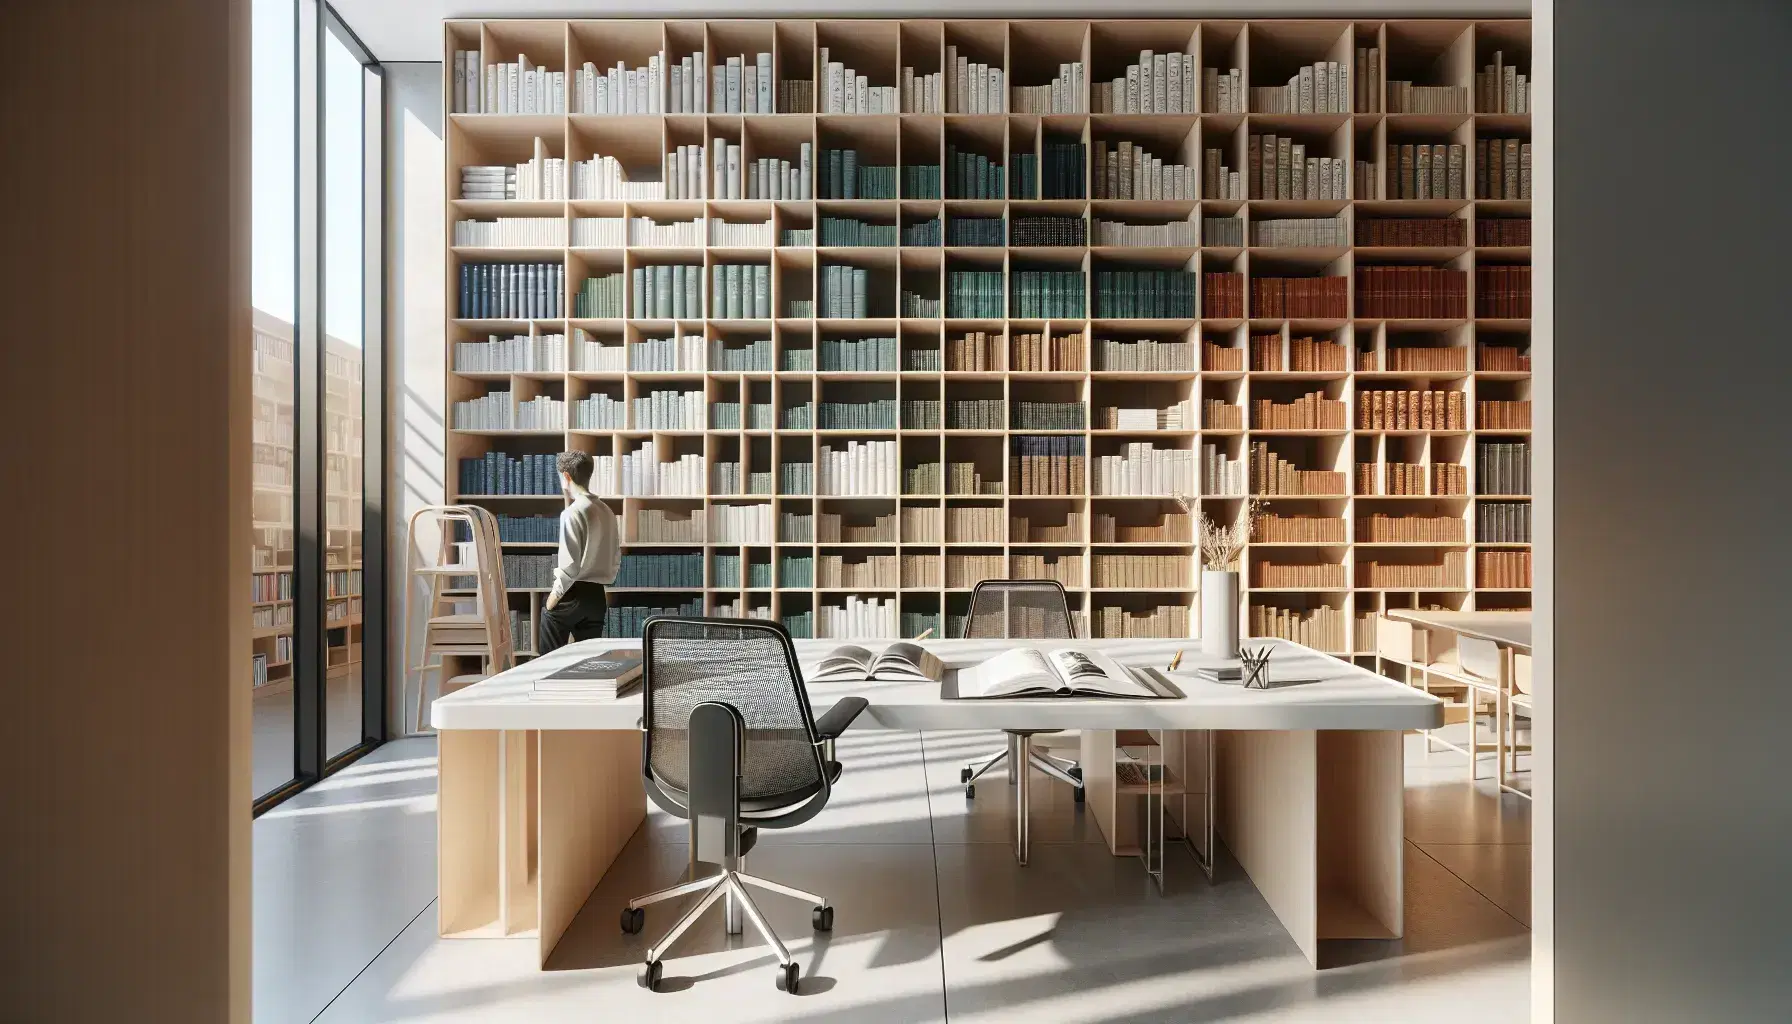 Biblioteca moderna y luminosa con estanterías de madera y libros de colores, mesa de estudio con libros y gafas, silla ergonómica y persona al fondo.